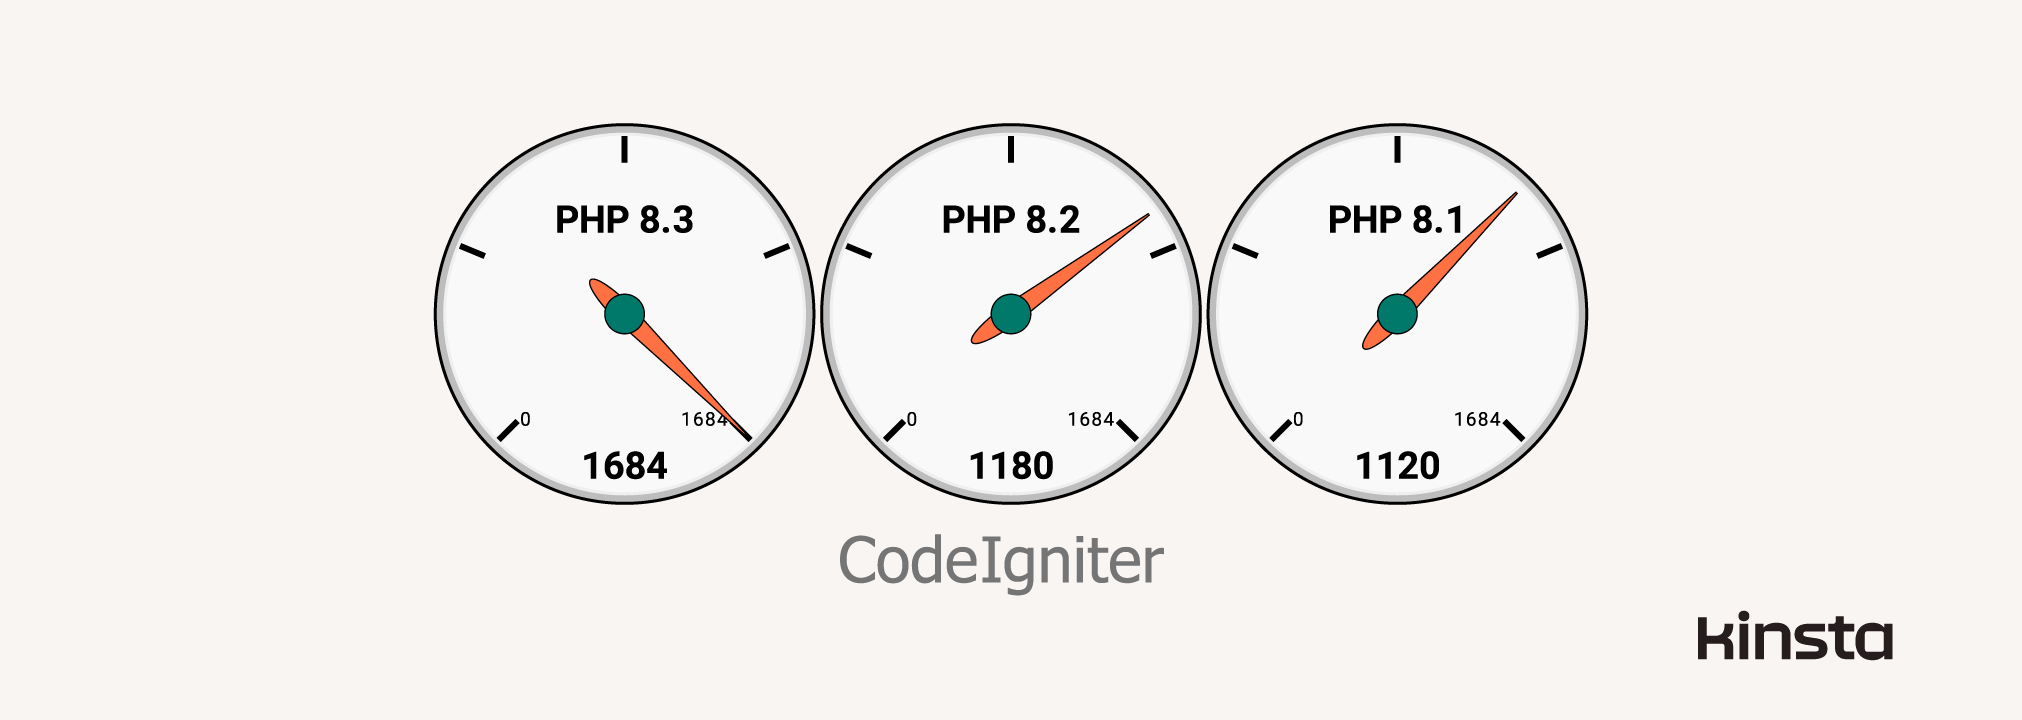 CodeIgniter 4.3.6 Leistung auf PHP 8.1, 8.2 und 8.3 (in Anfragen/Sekunde)